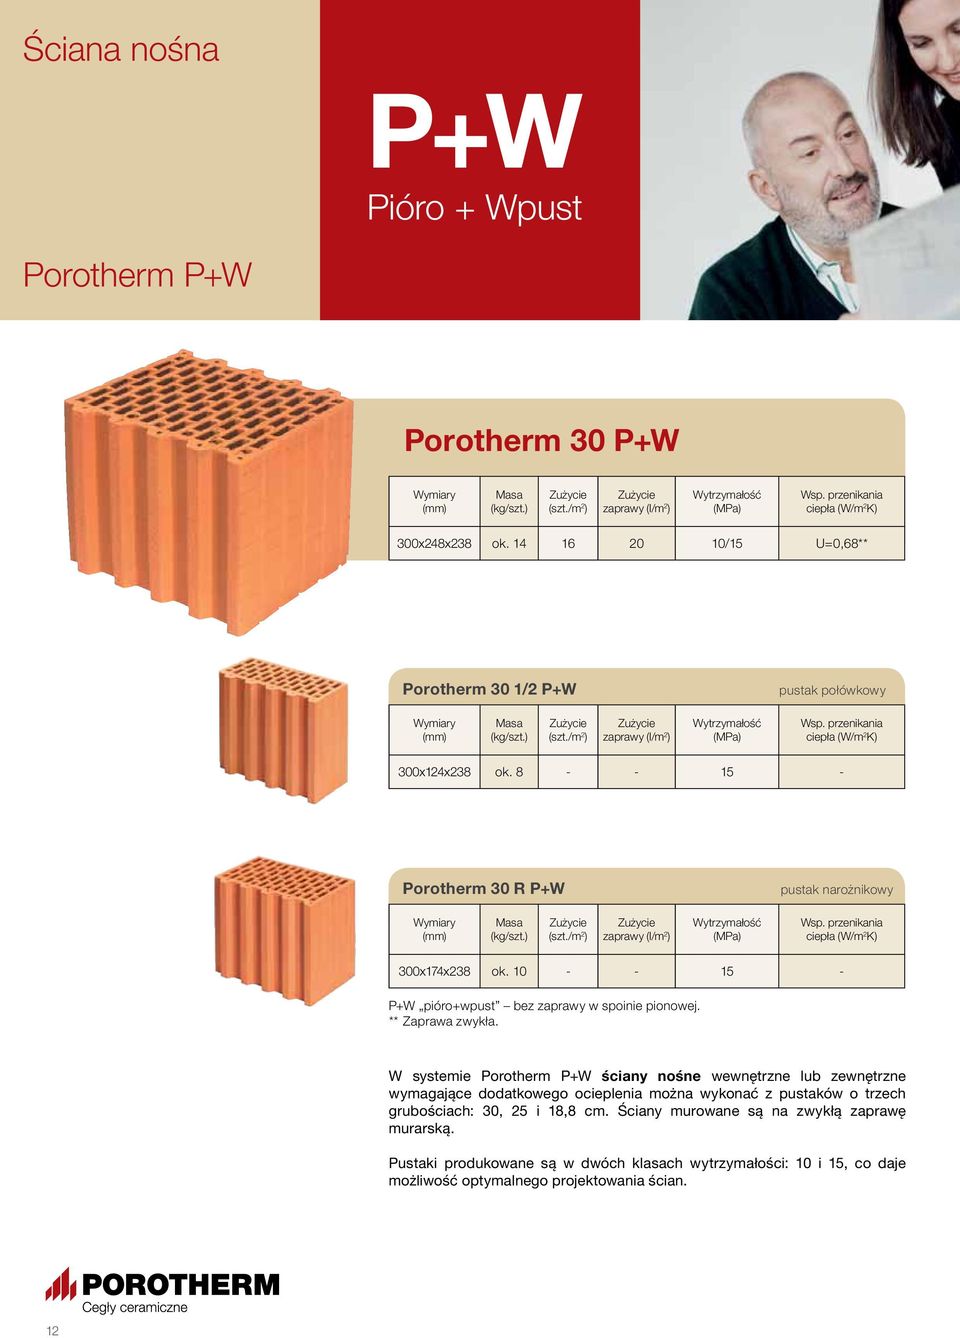 W systemie Porotherm P+W ściany nośne wewnętrzne lub zewnętrzne wymagające dodatkowego ocieplenia można wykonać z pustaków o trzech grubościach: 30, 25 i